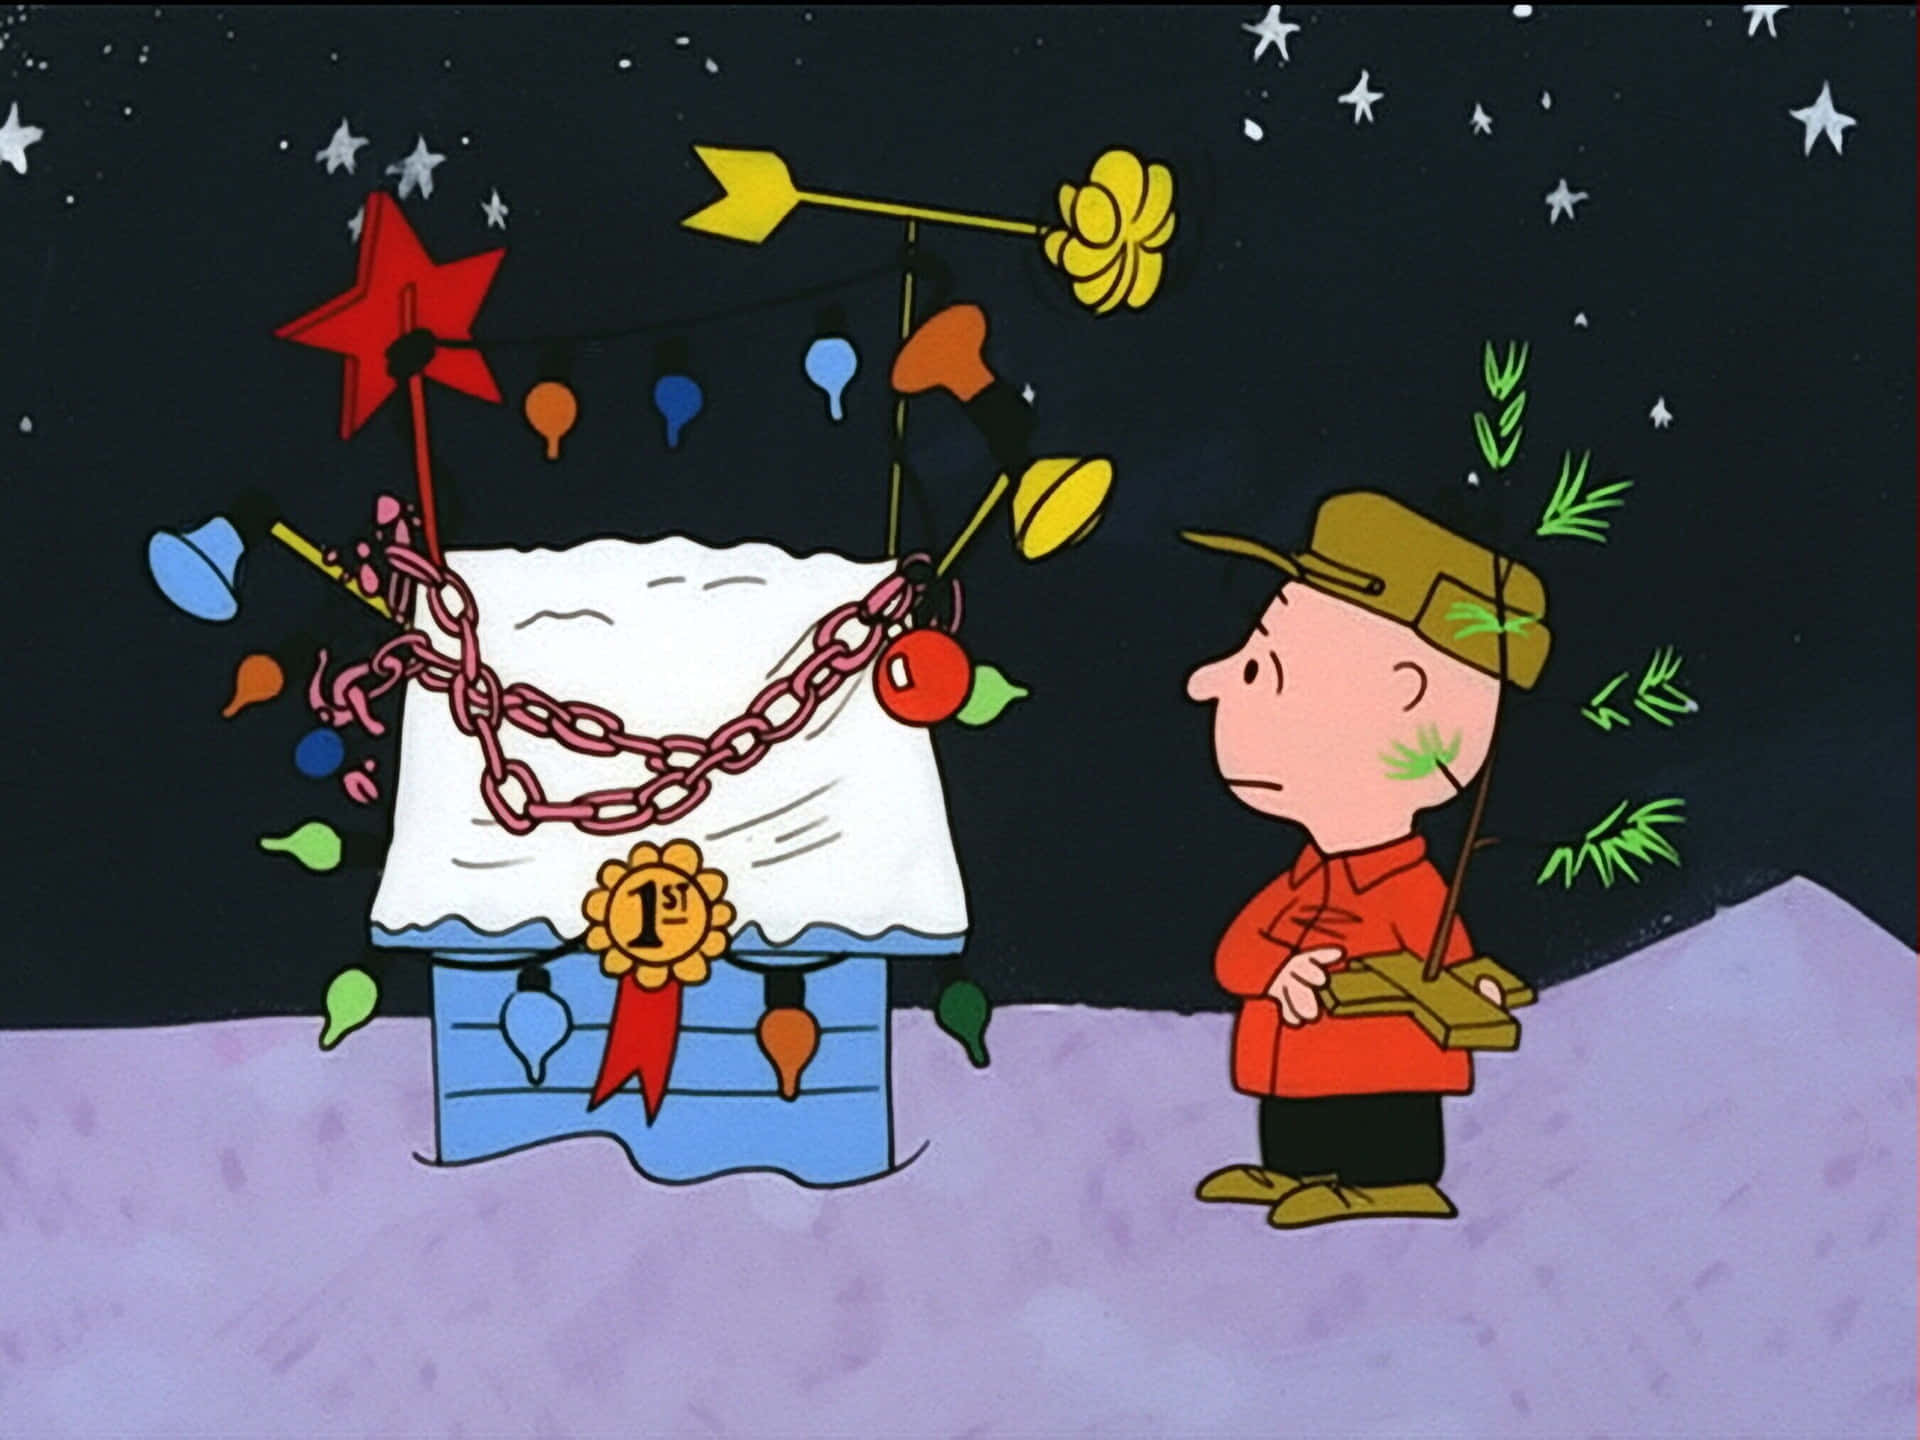 Julseriefigurernacharlie Brown Och Snoopy. Wallpaper